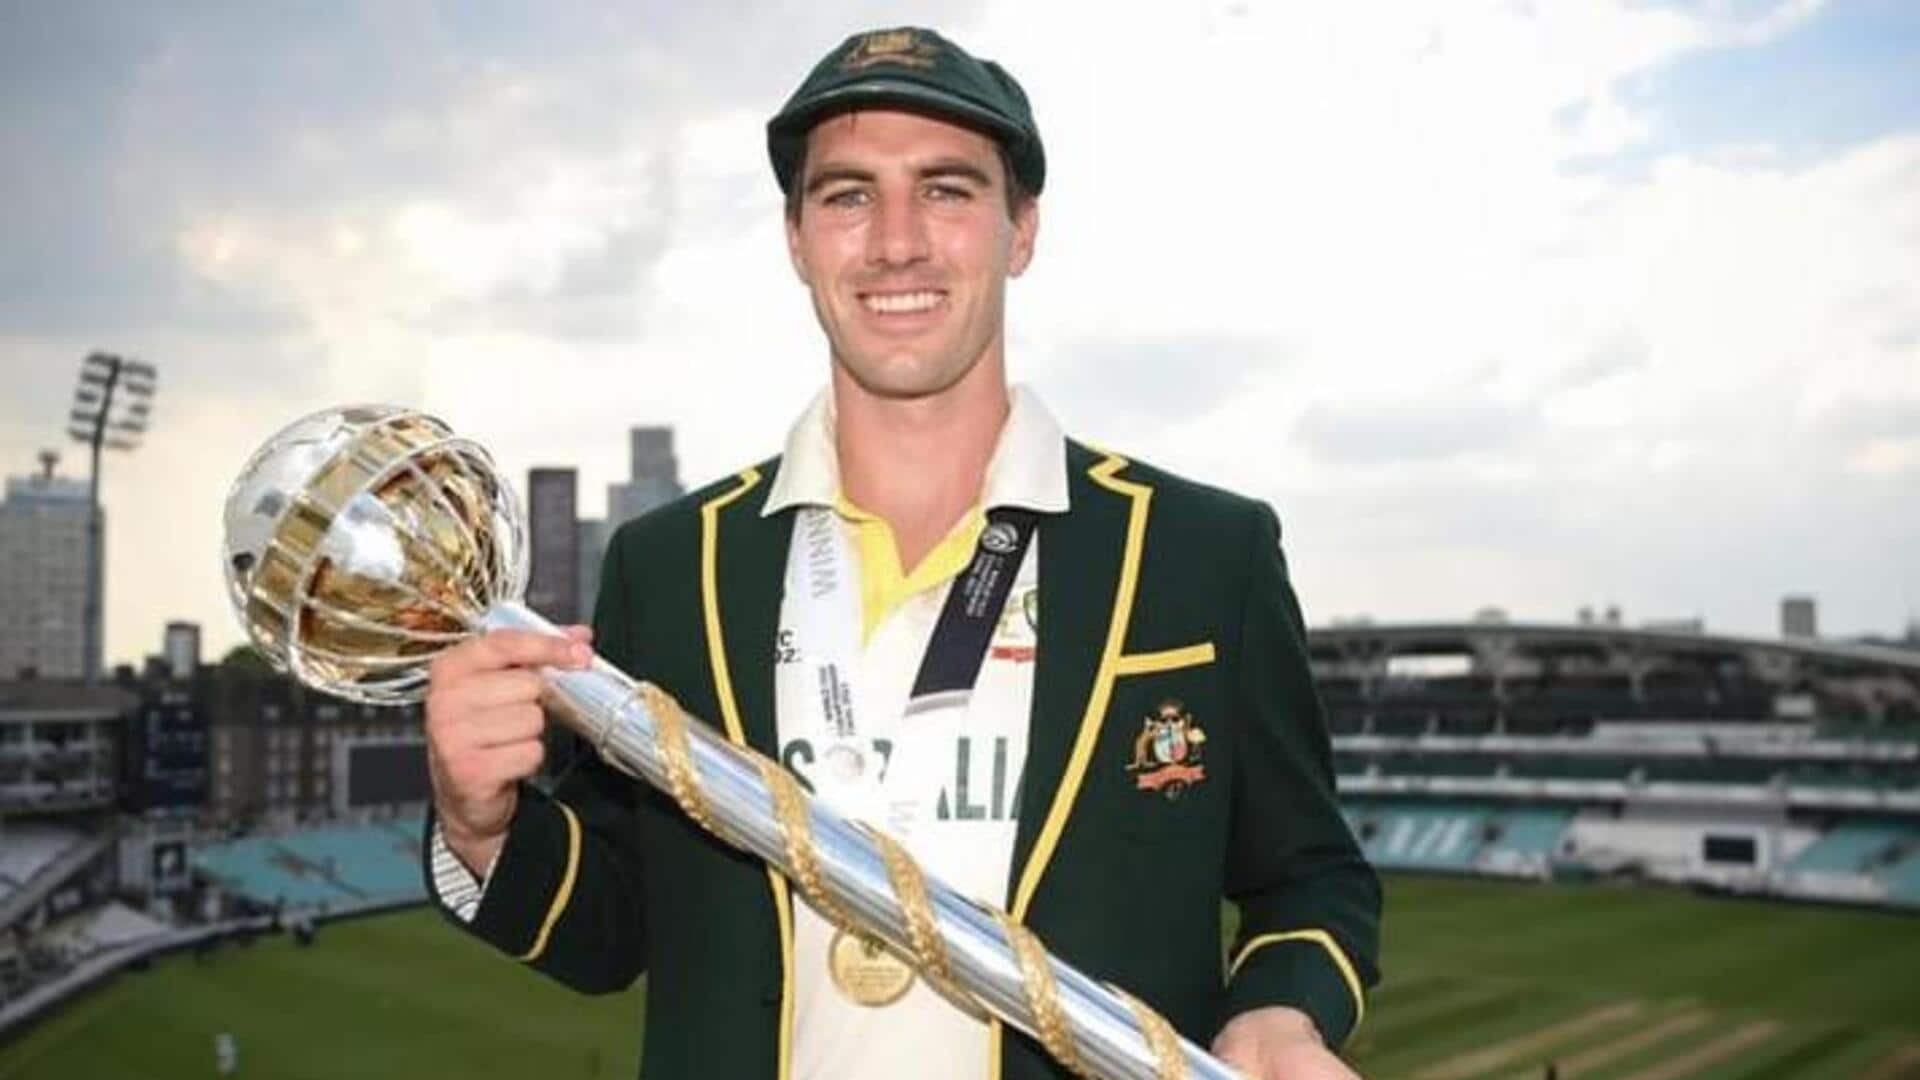 पैट कमिंस के टेस्ट क्रिकेट में 1,000 रन पूरे, जानिए ऑस्ट्रेलियाई कप्तान का प्रदर्शन